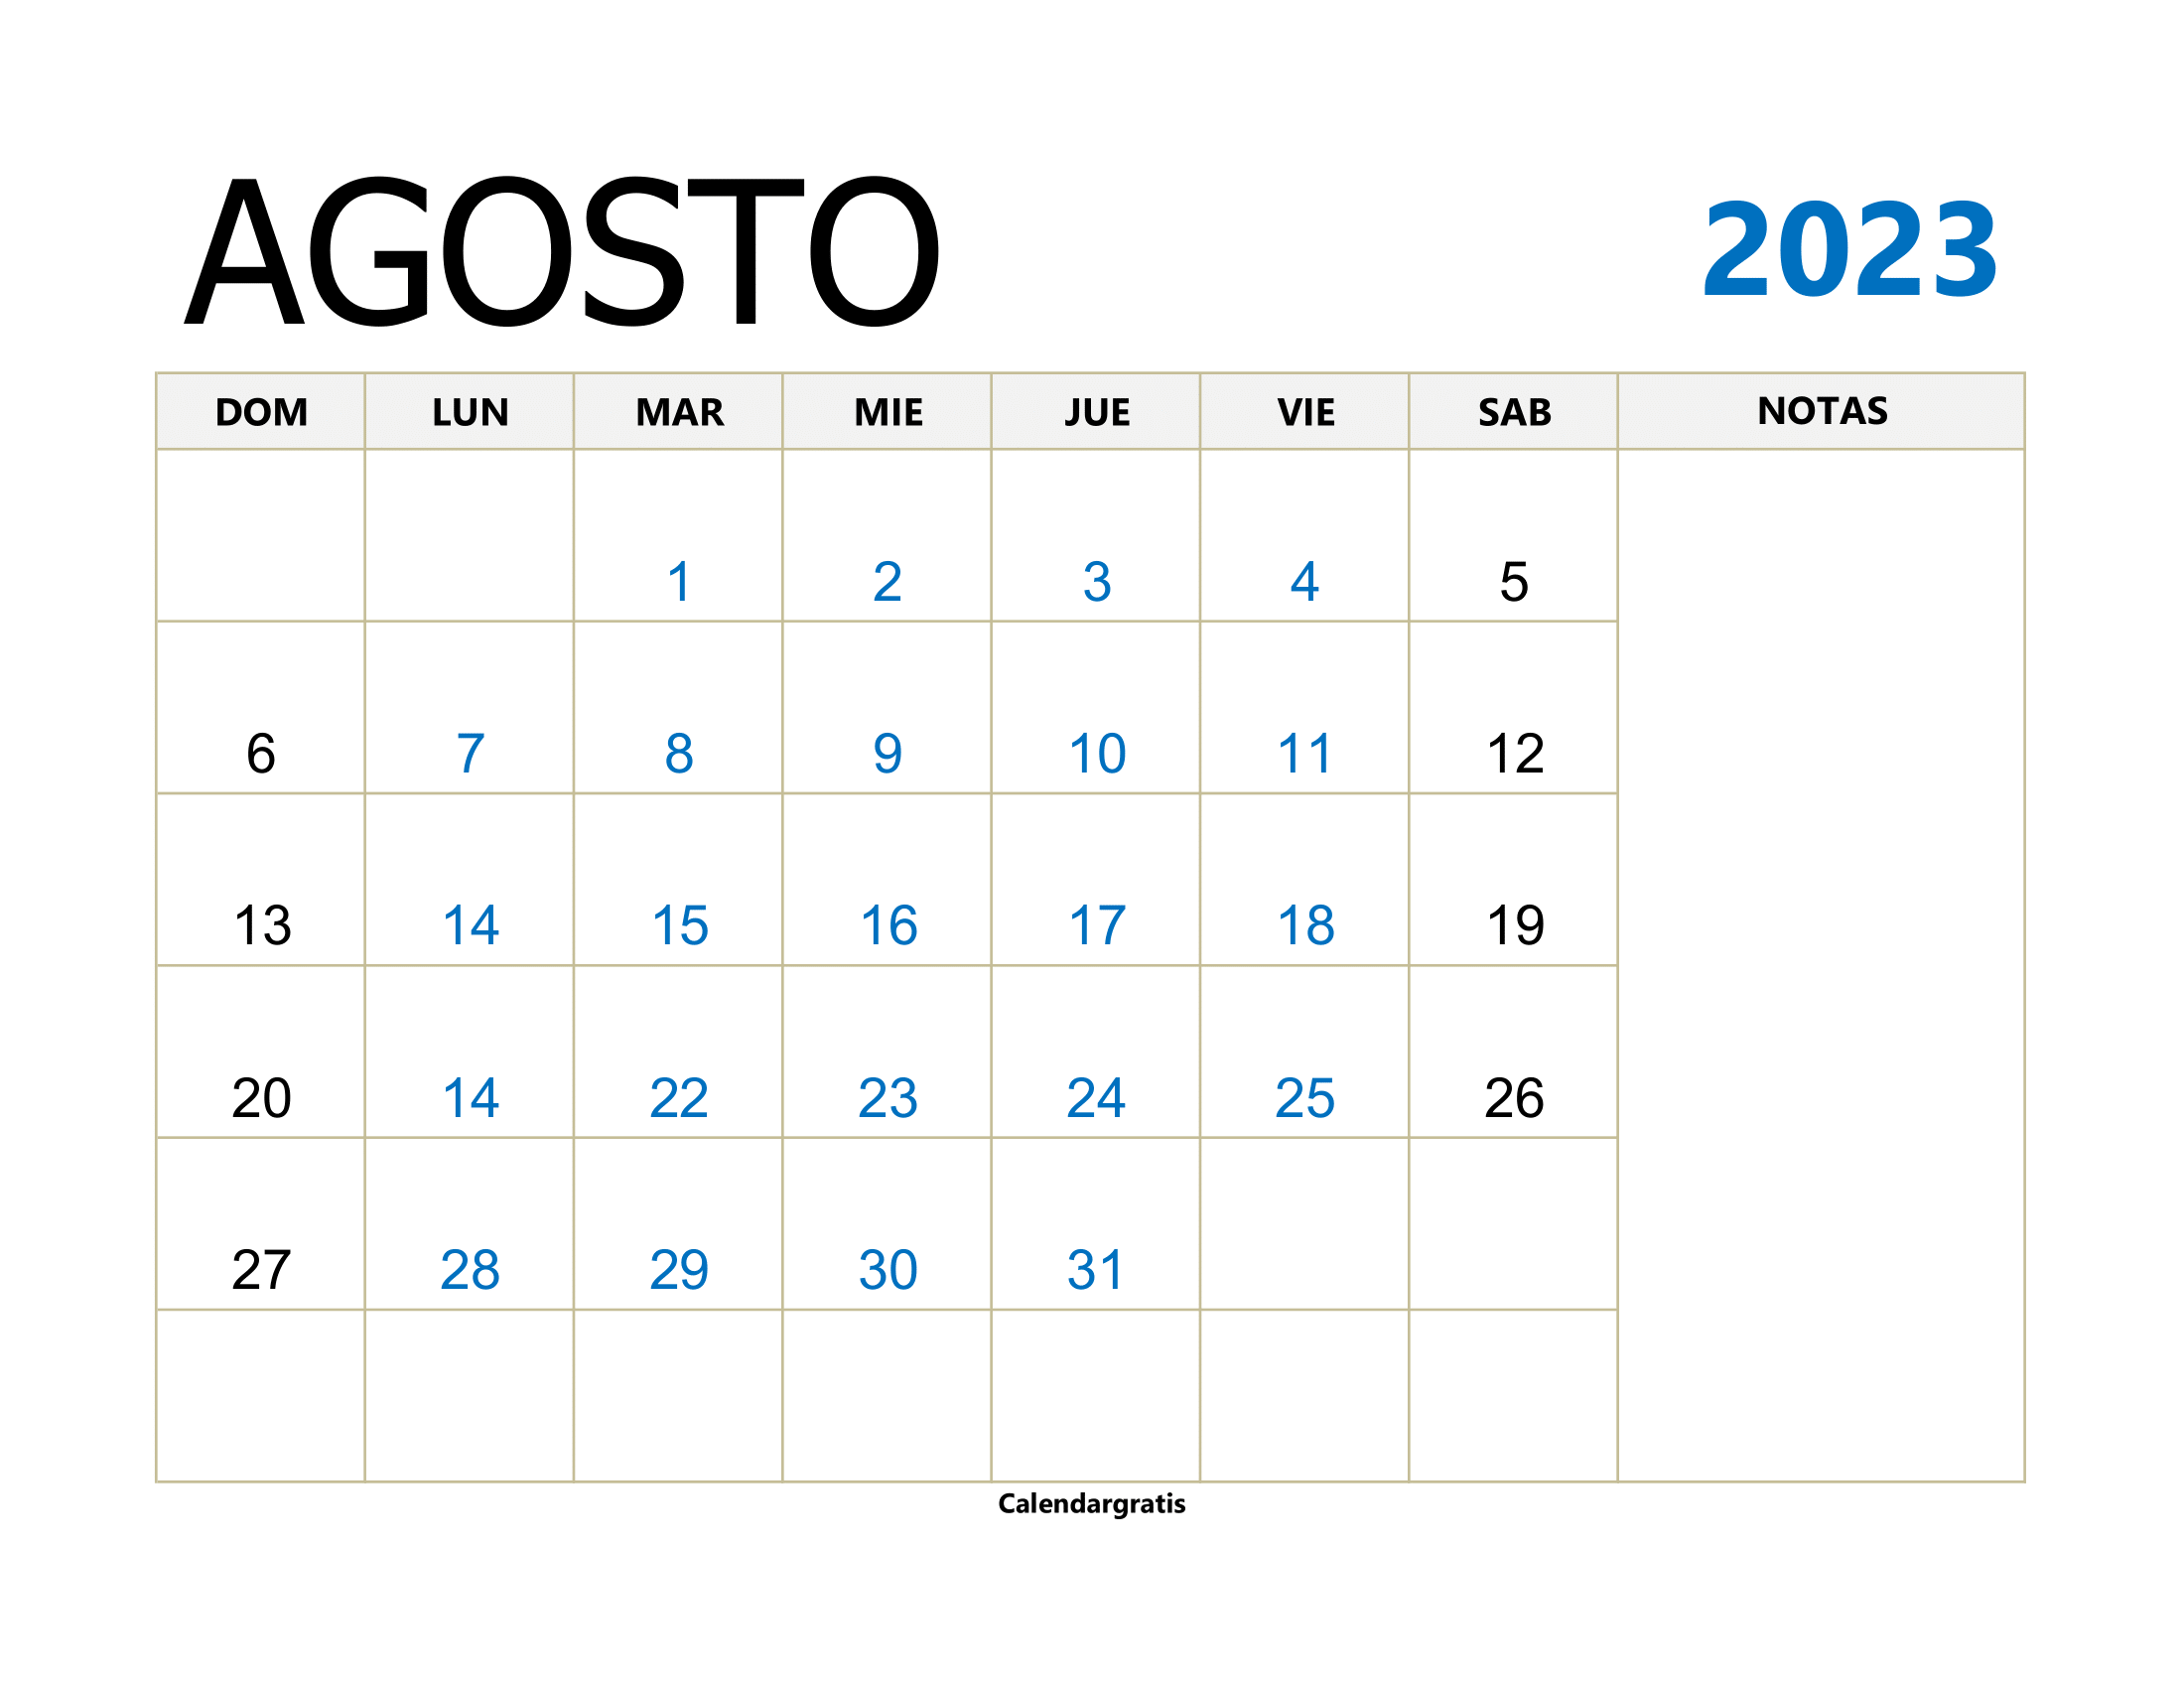 "Calendario Agosto 2023 Con Notas" - Una imagen de calendario que presenta el mes de agosto del año 2023, con espacio para notas y recordatorios.